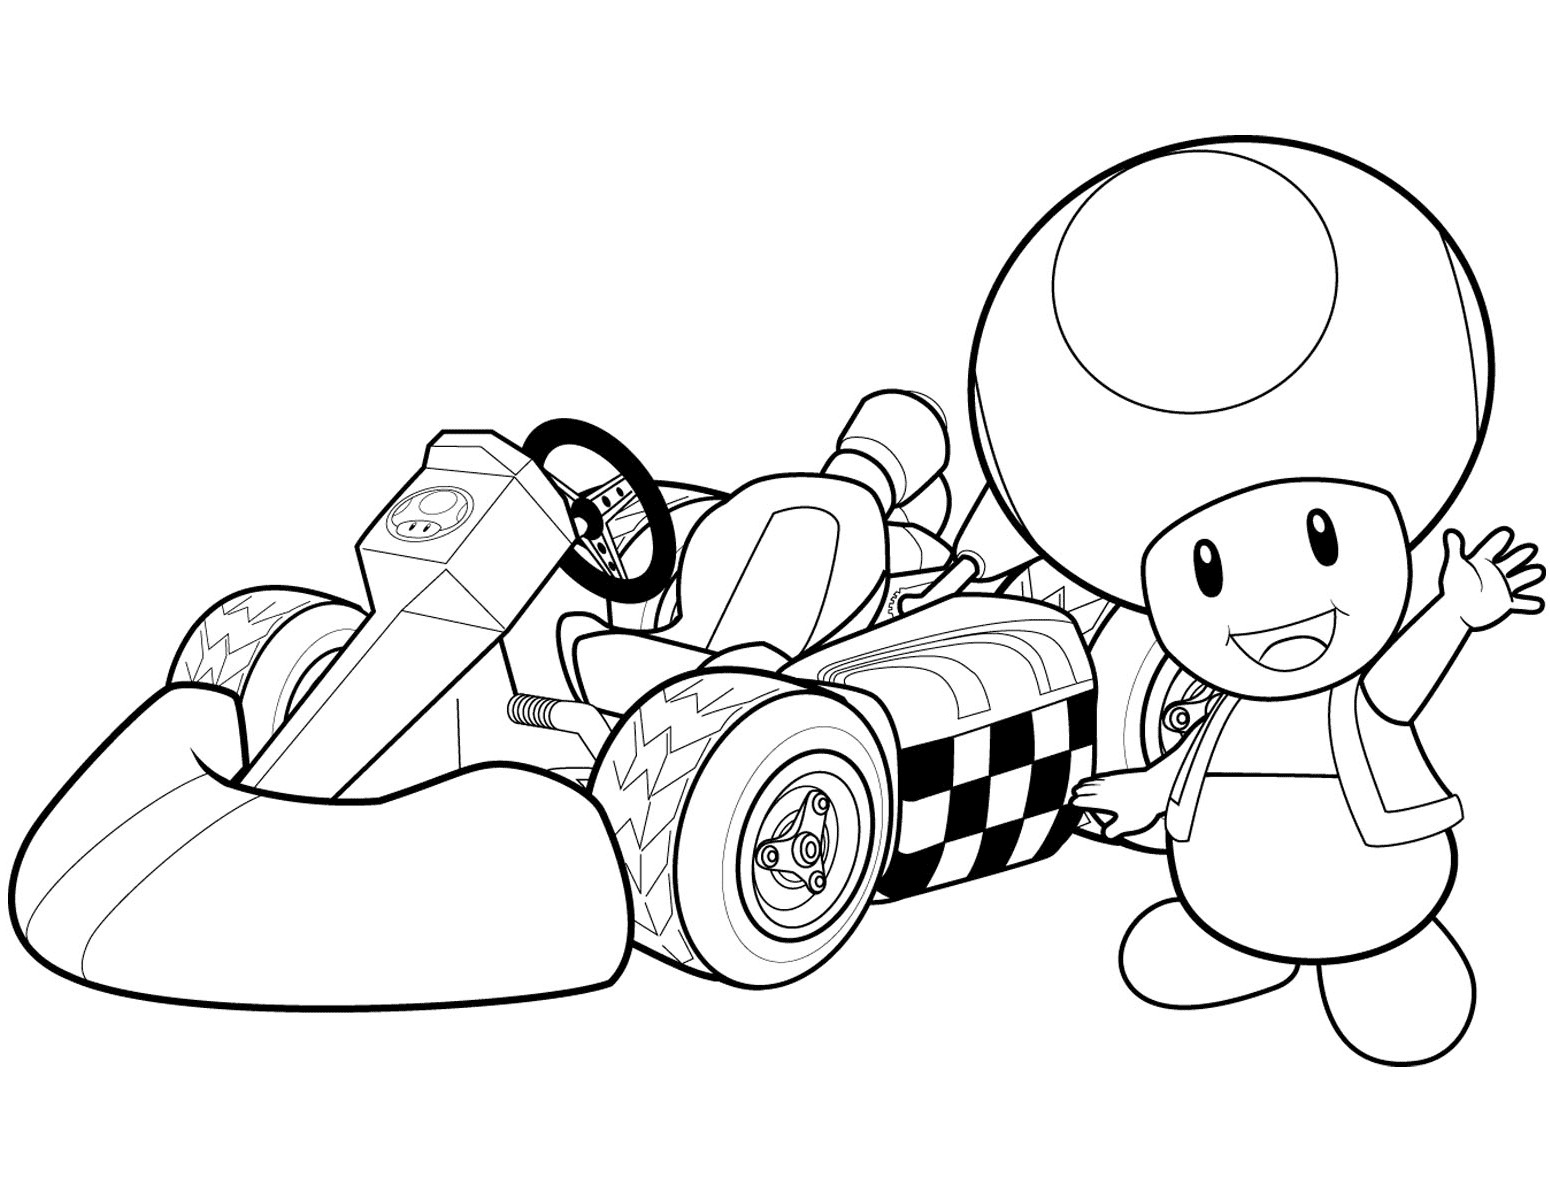 العلجوم وسيارة السباق الخاصة به في ماريو كارت وي من العلجوم ماريو